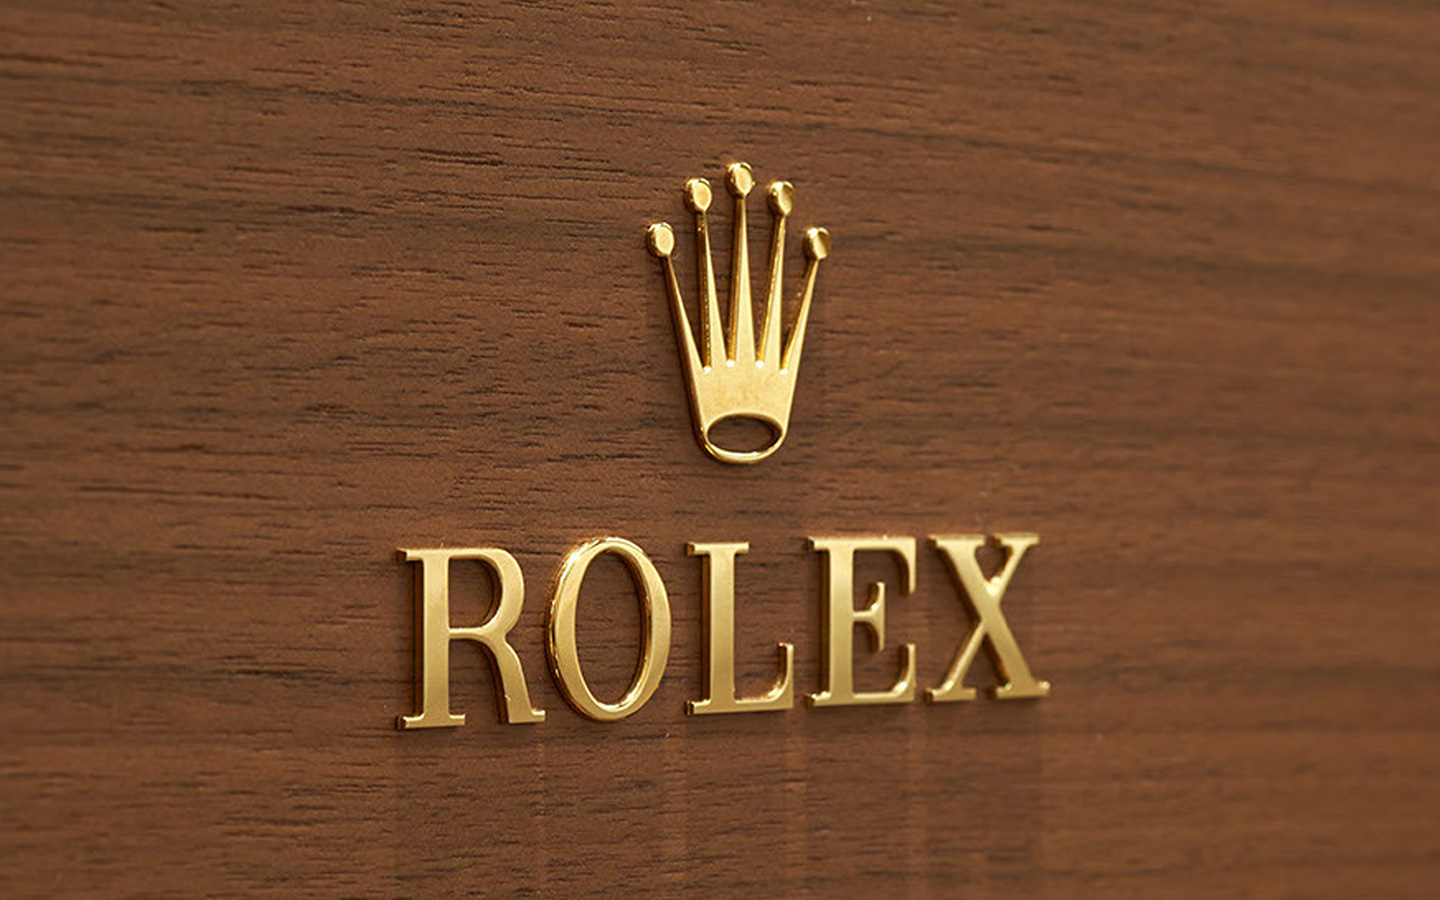 Rolex Store in the Virgin Islands